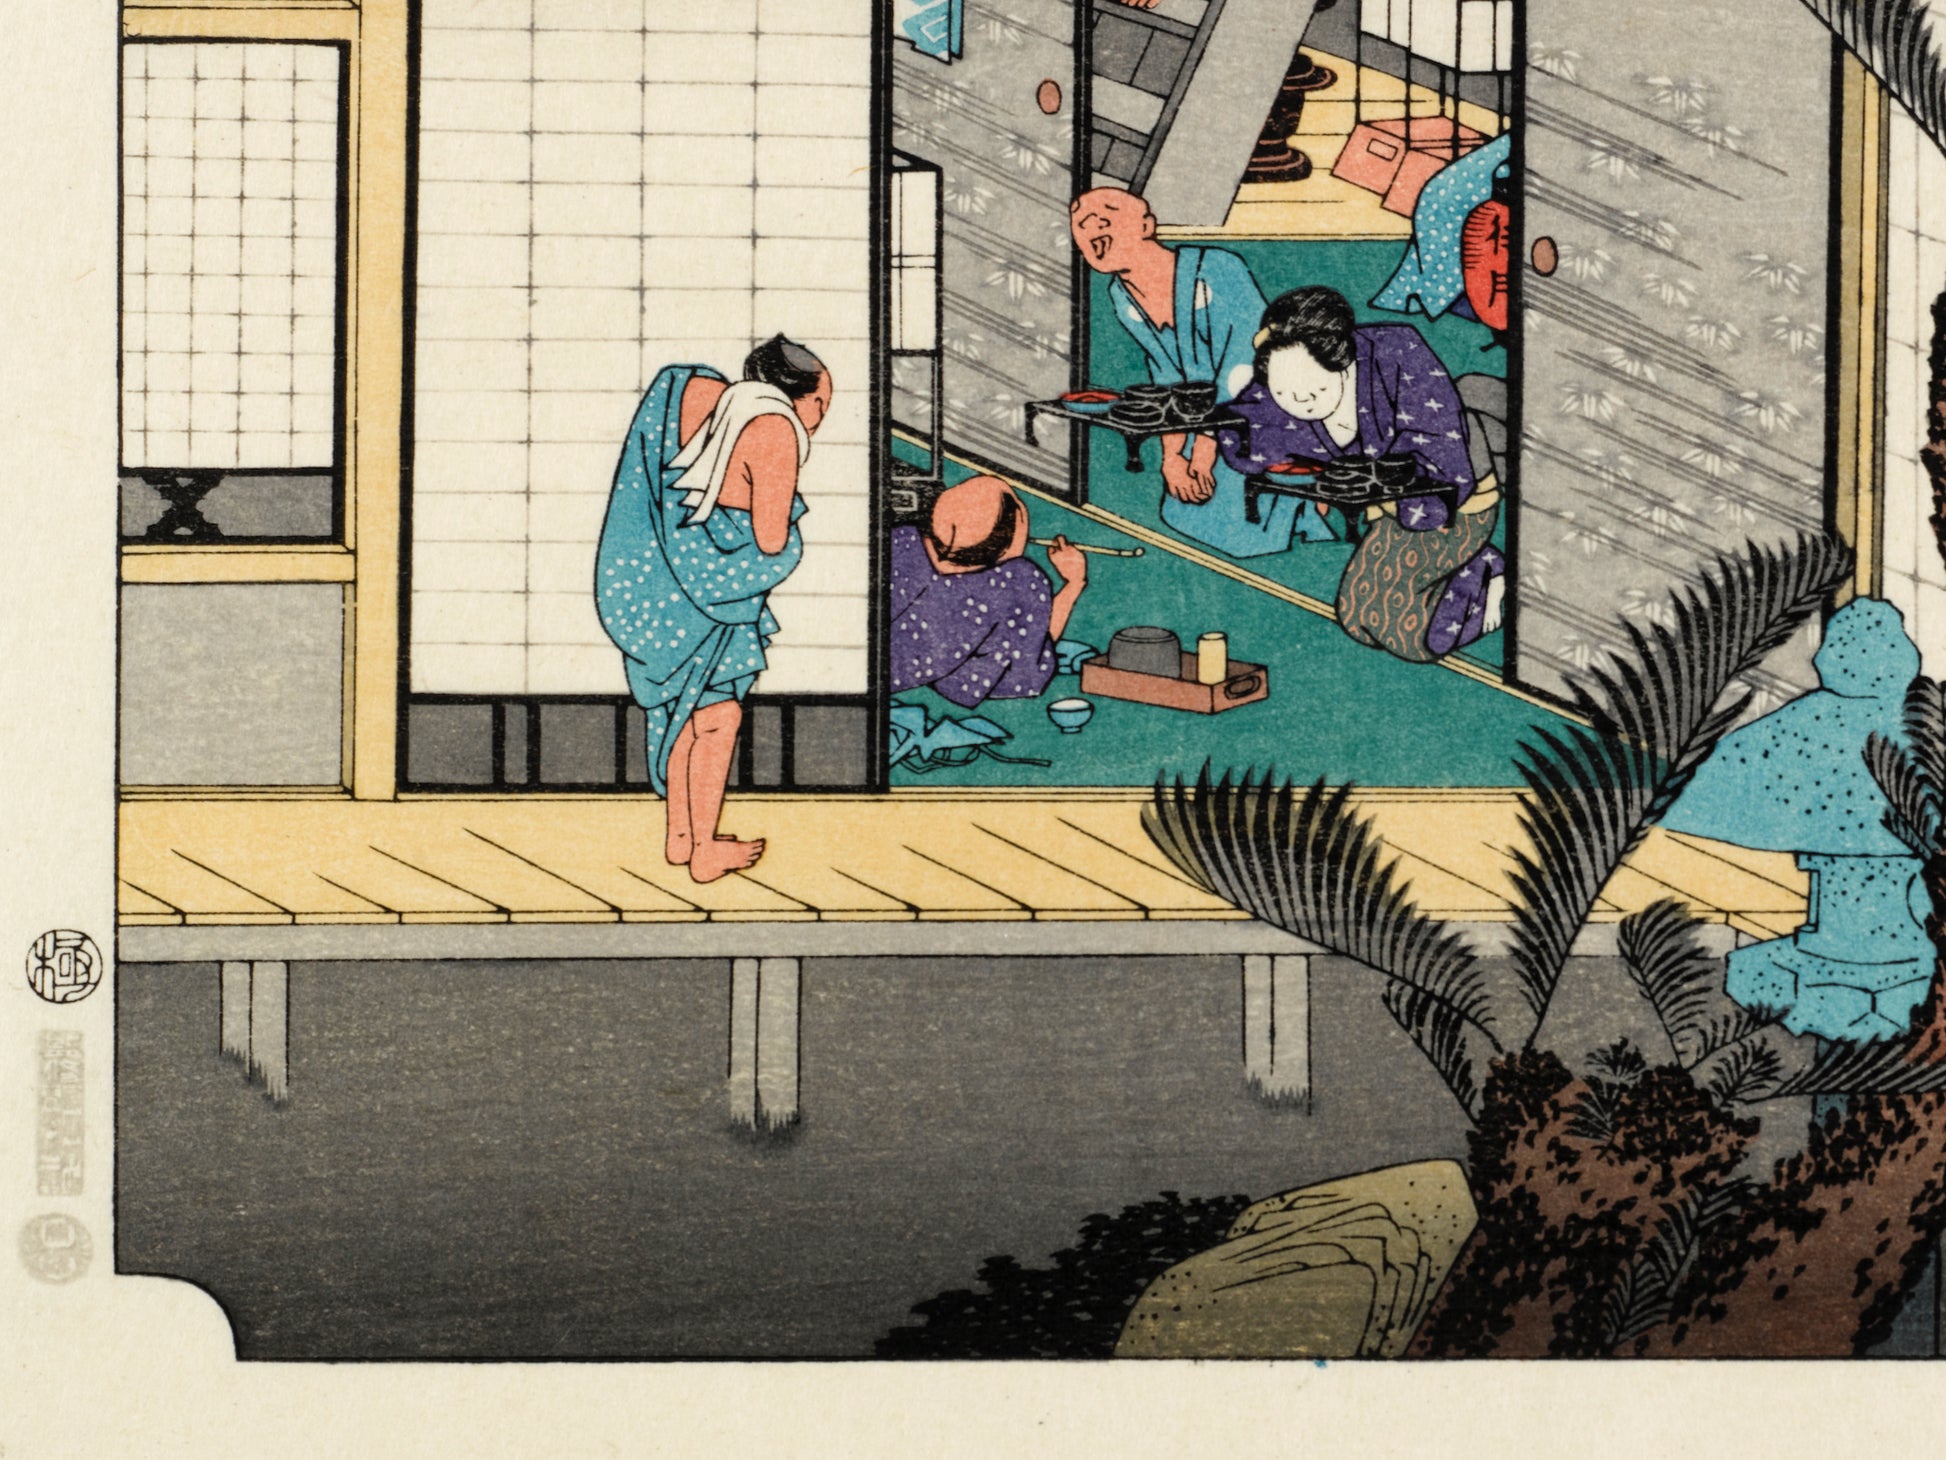 estampe japonaise intérieur d'une auberge avec voyageurs et geishas, sceau de censure